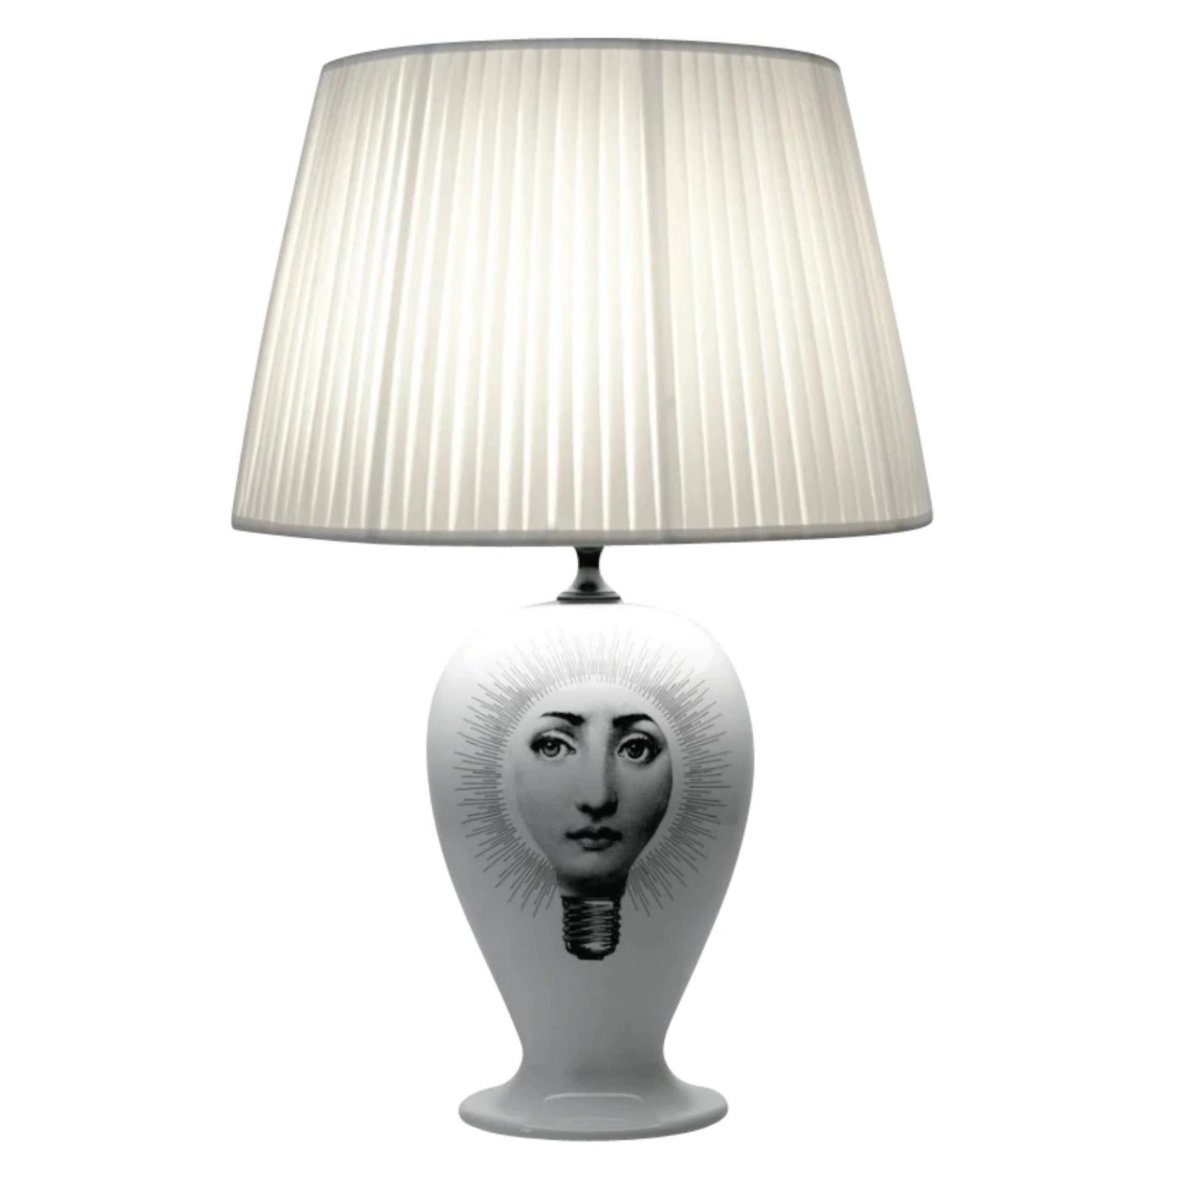 lamp-base-lampadina-black-white-n